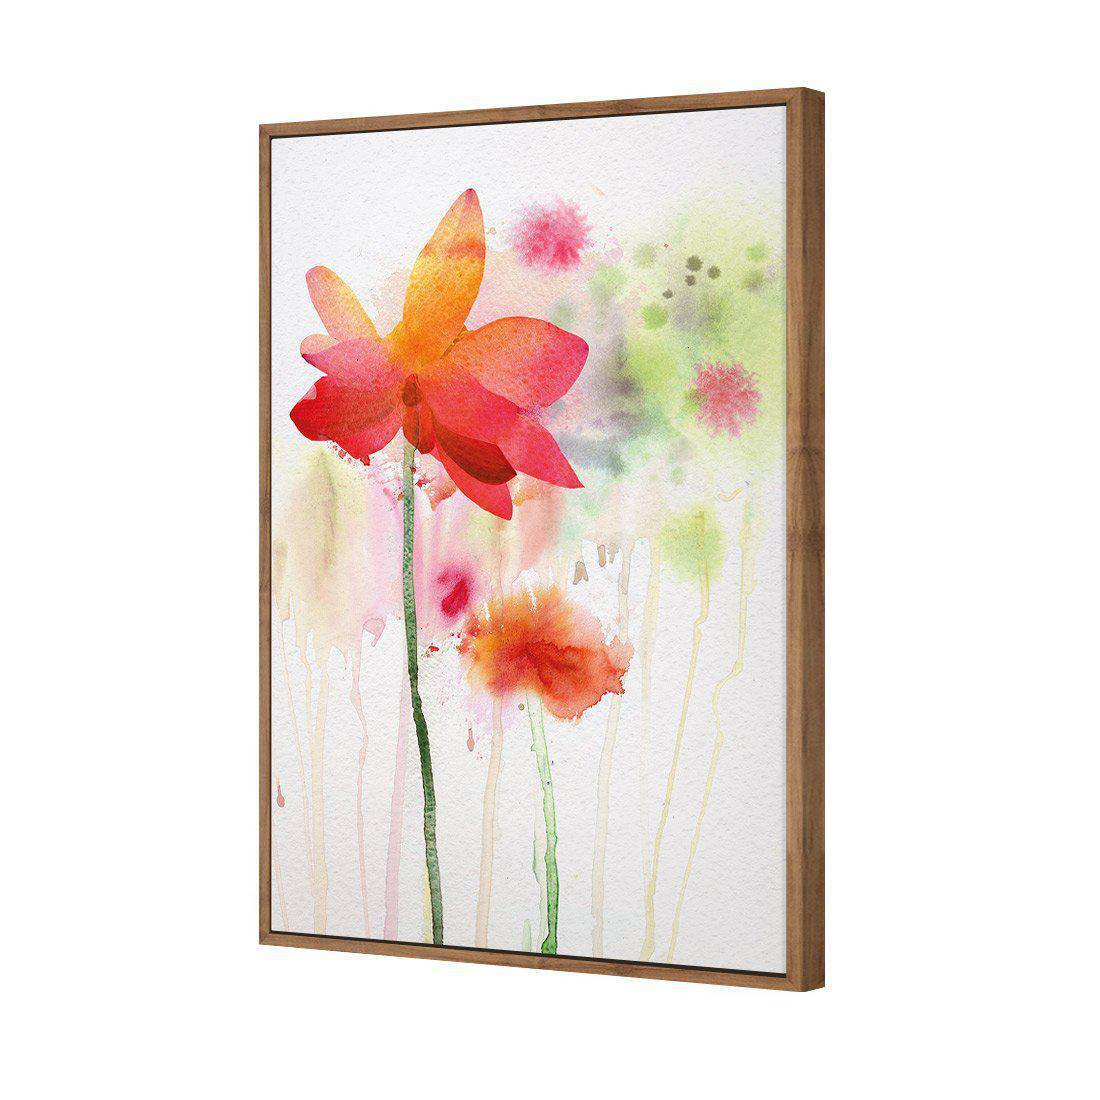 Spring Rain Canvas Art-Canvas-Wall Art Designs-45x30cm-Canvas - Natural Frame-Wall Art Designs